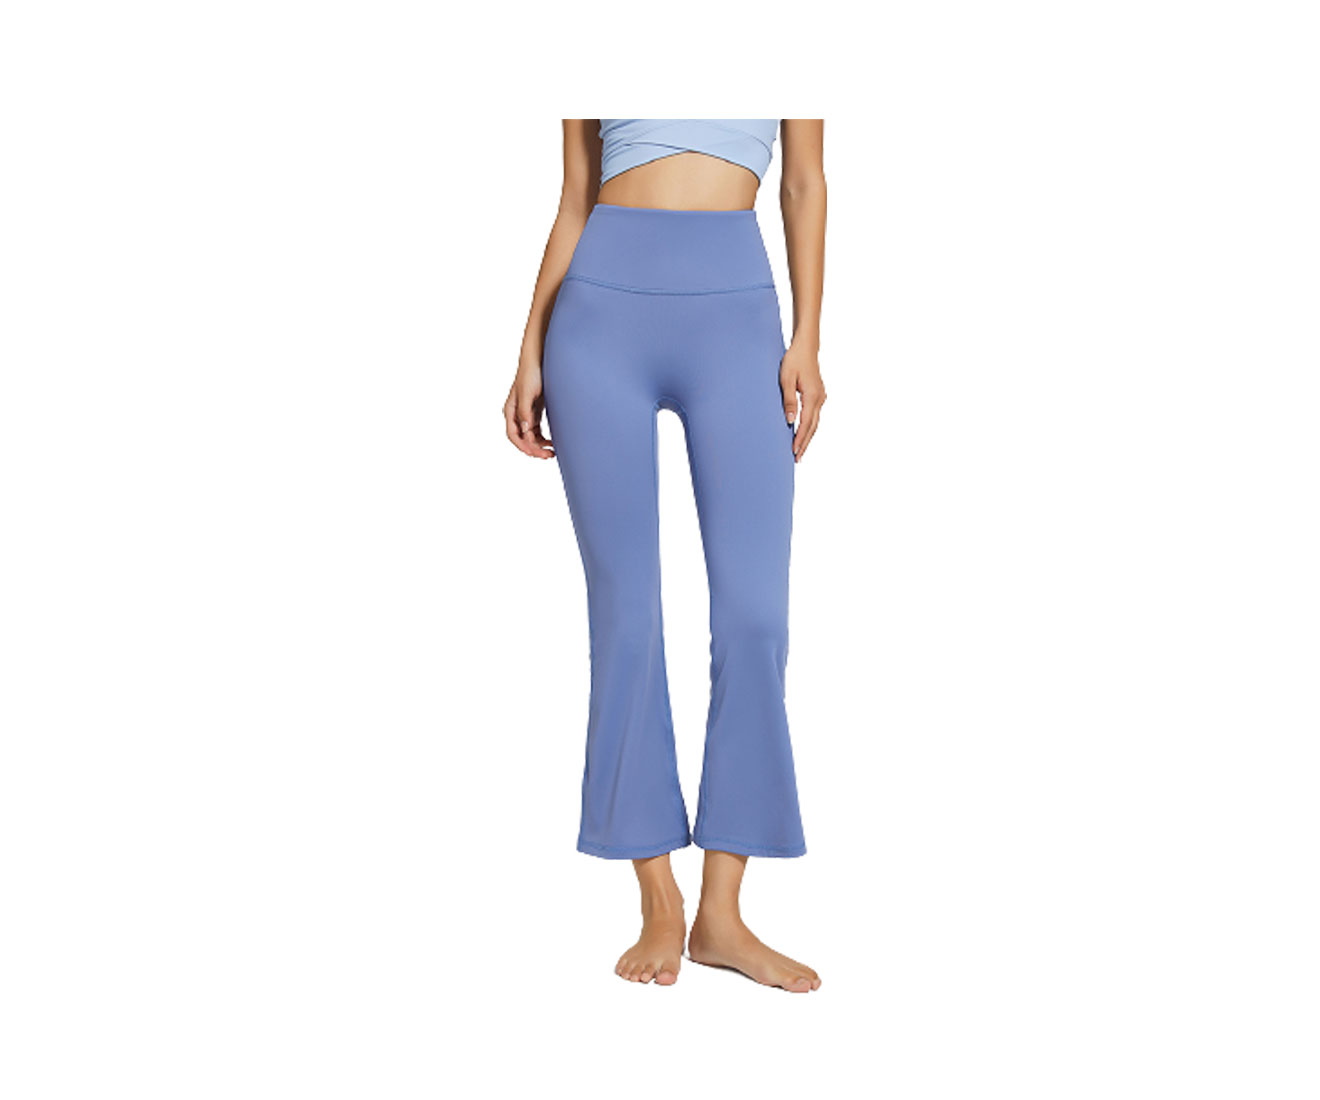 Women's Bootcut Yoga Pants